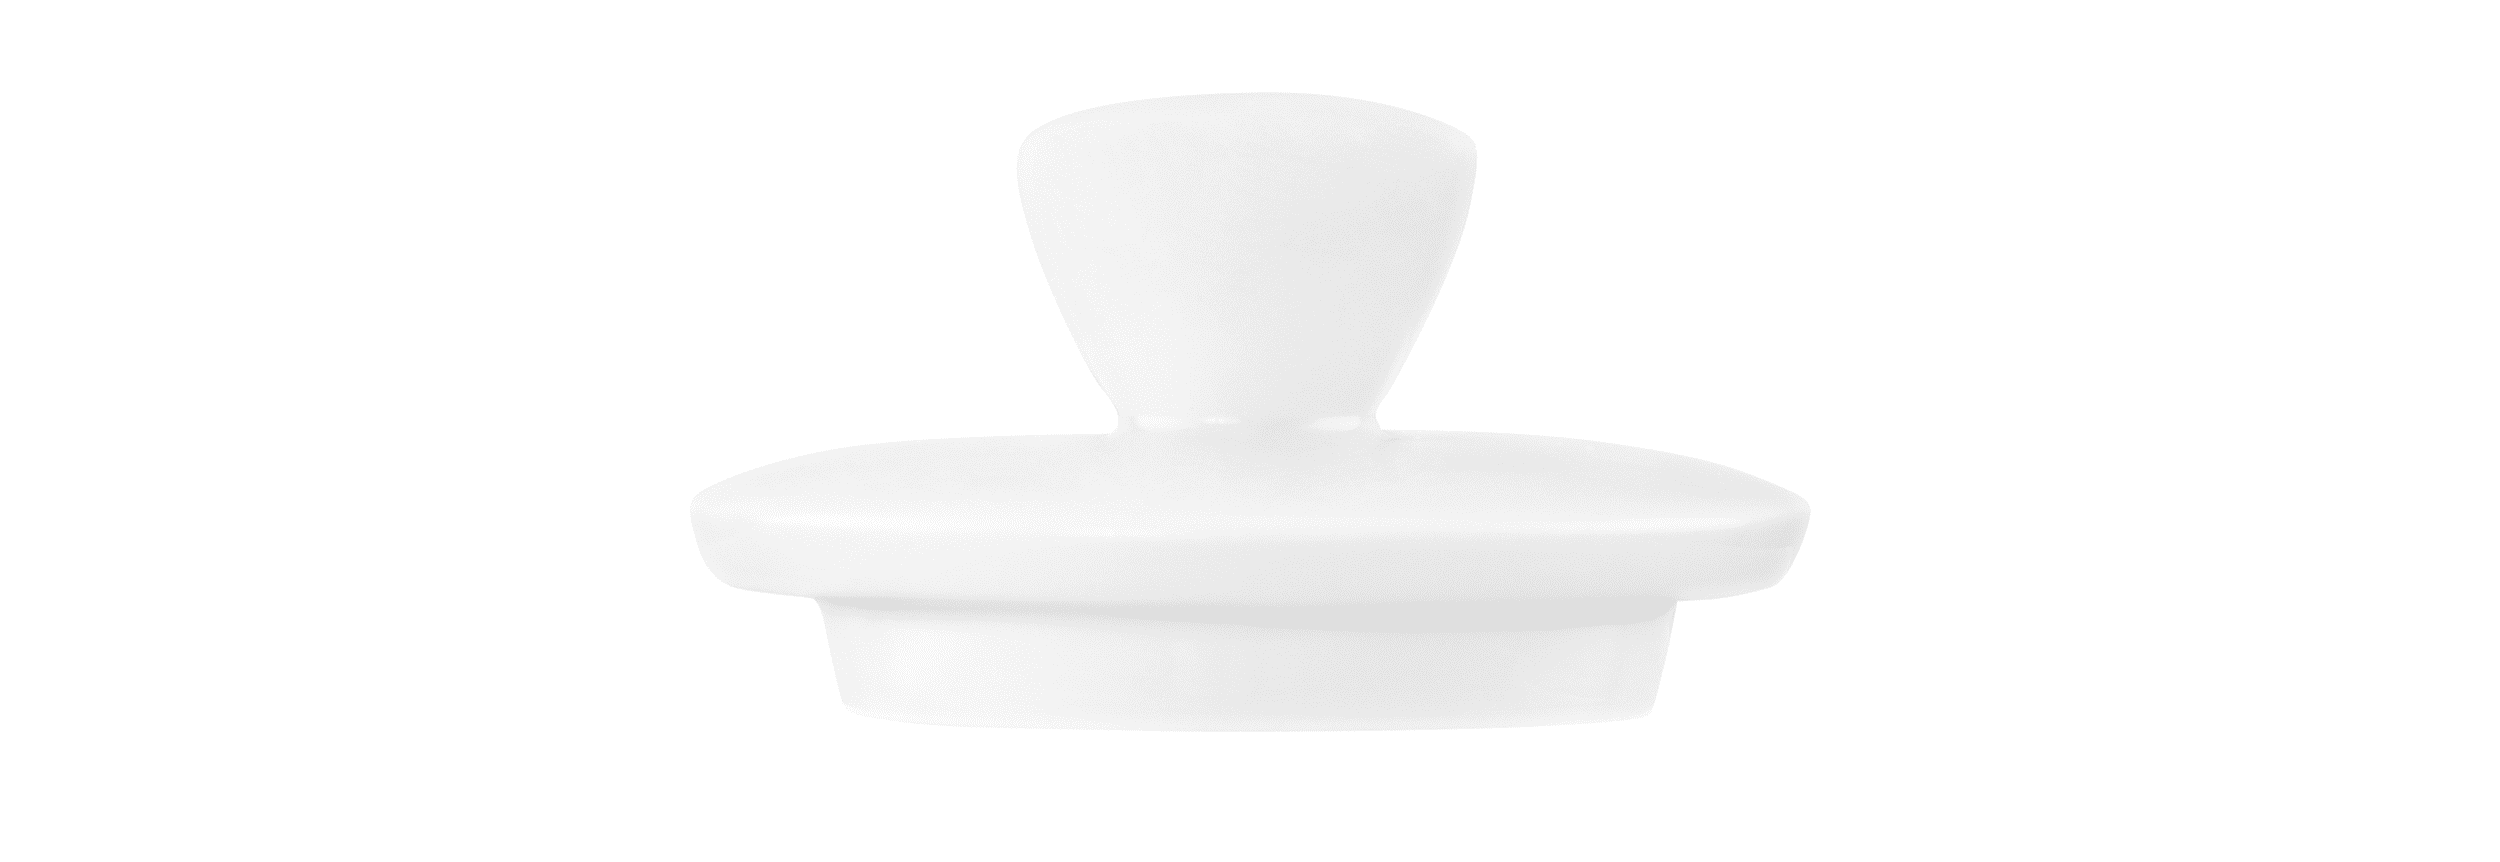 Seltmann Porzellan Liberty Weiß Deckel zur Zuckerdose 0,26 l